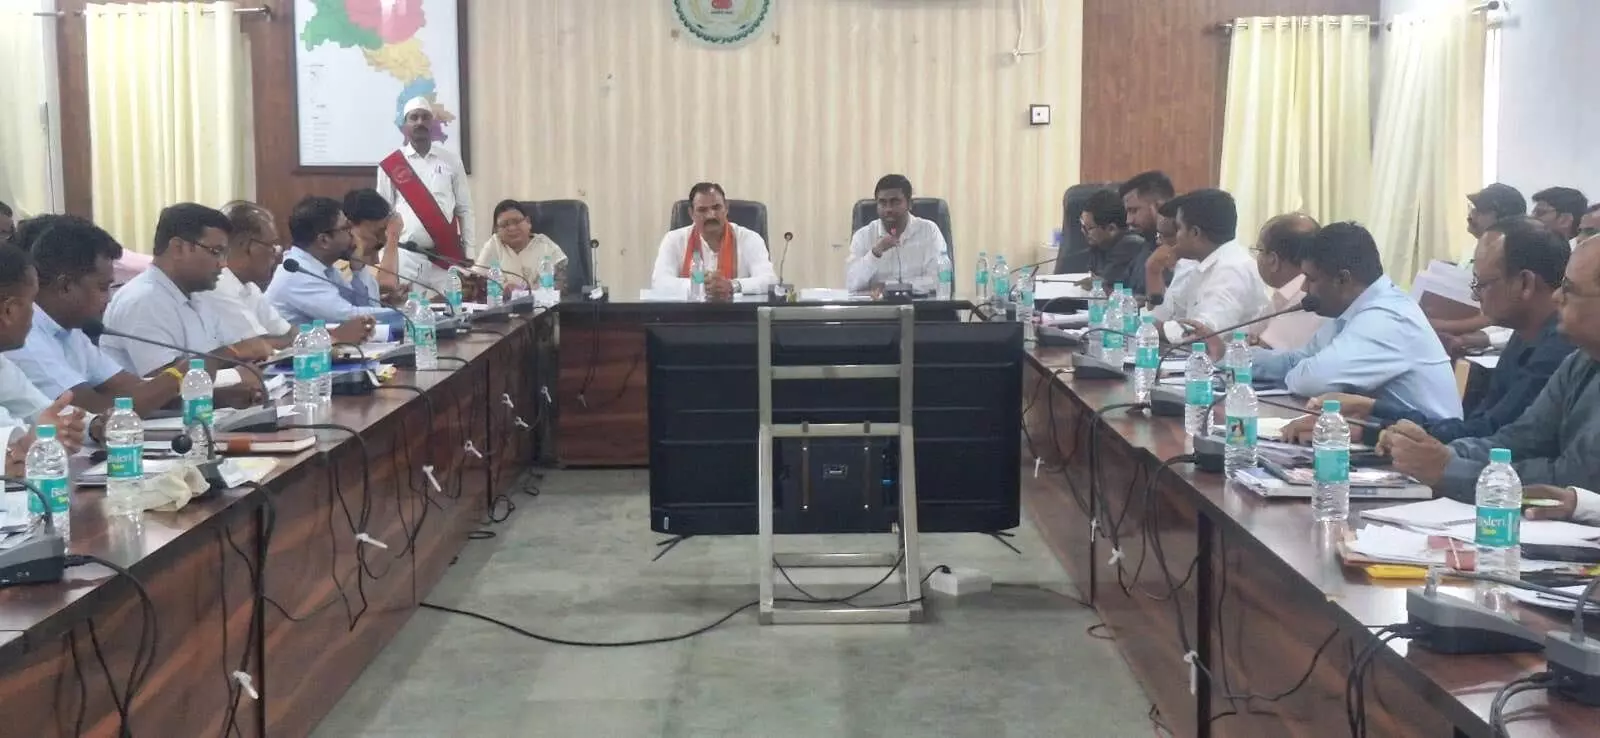 Health minister श्याम बिहारी जायसवाल ने ली जिला अधिकरियों की समीक्षा बैठक